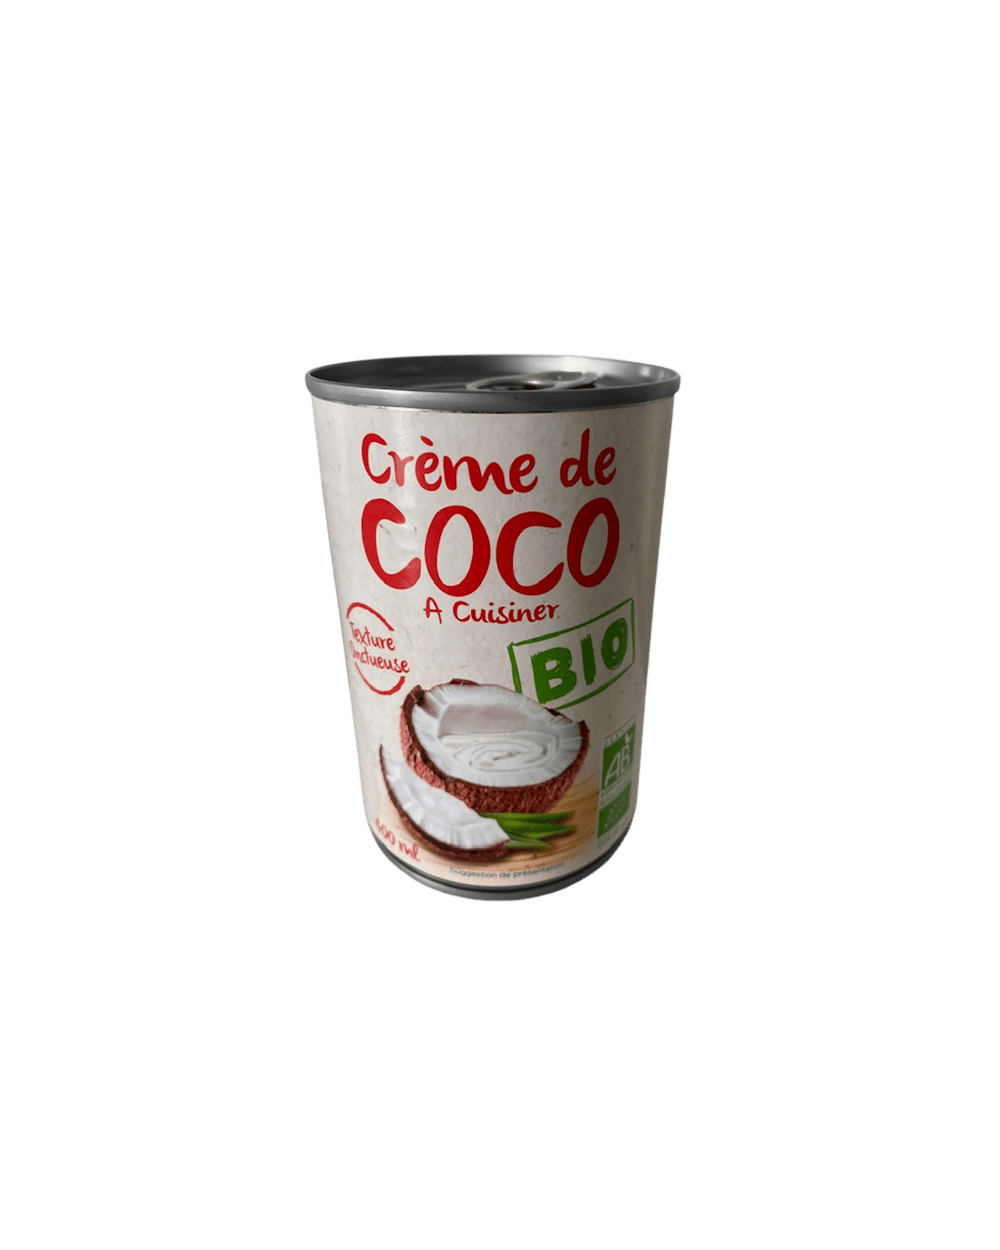 Huile de coco bio – Le Panier – L'épicerie fine